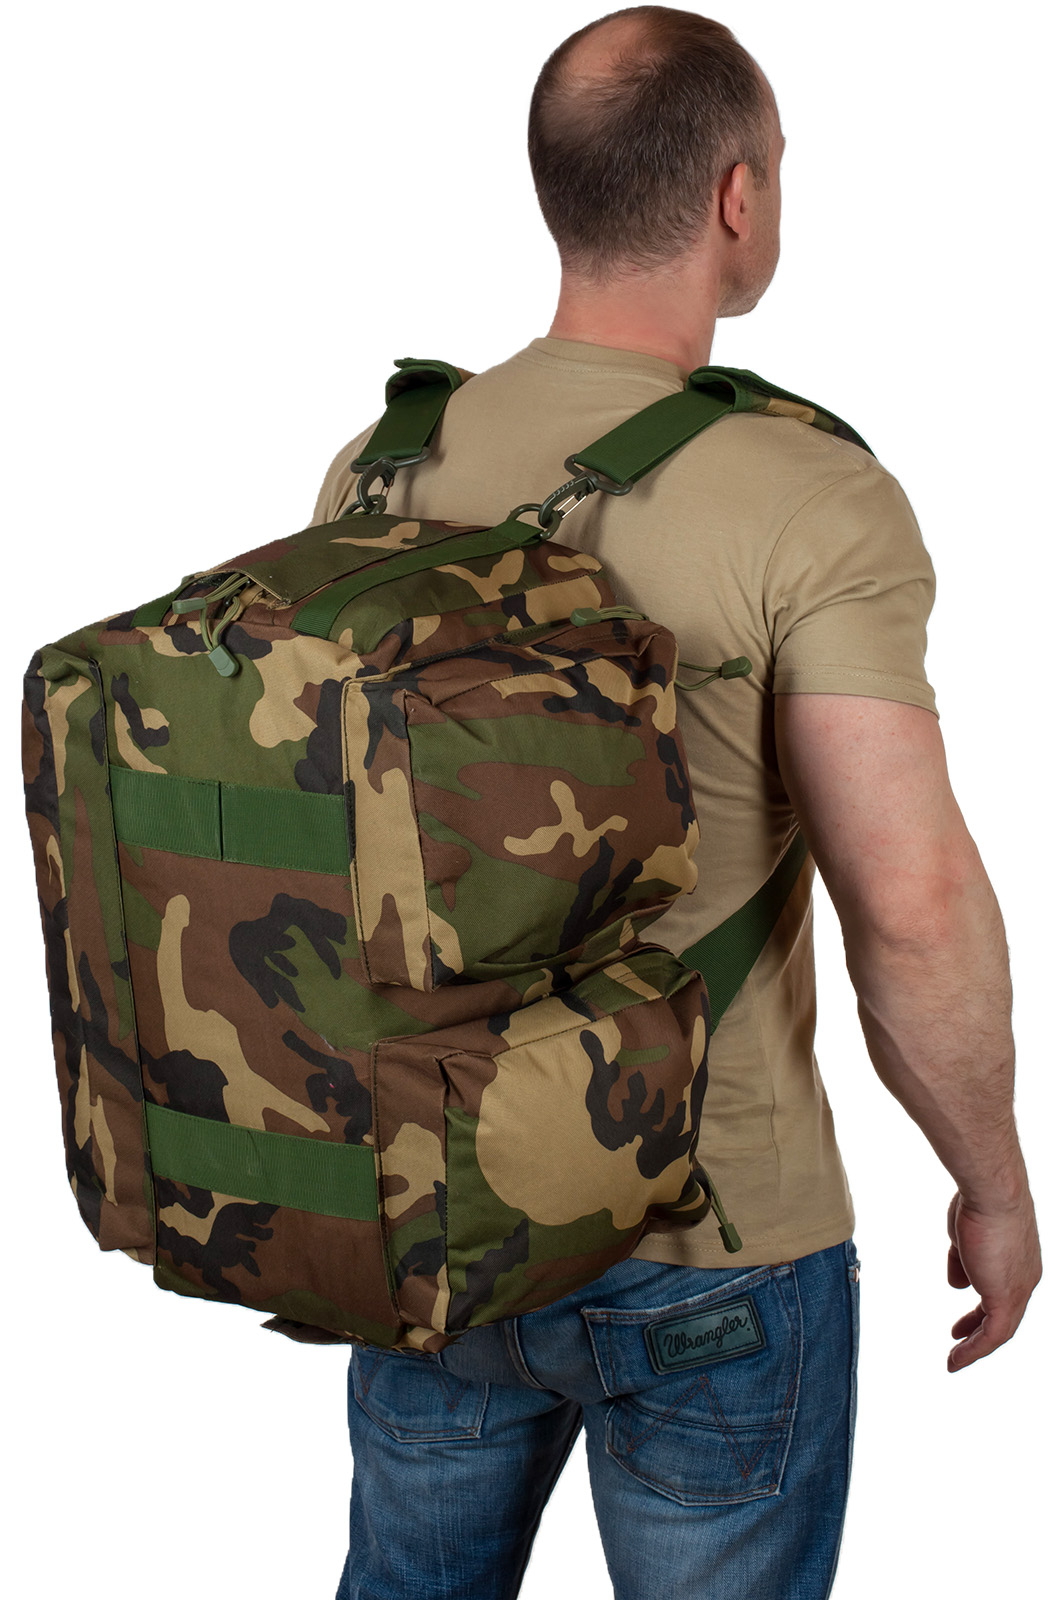 Армейская дорожная сумка (камуфляж Woodland) с нашивкой Росгвардия 